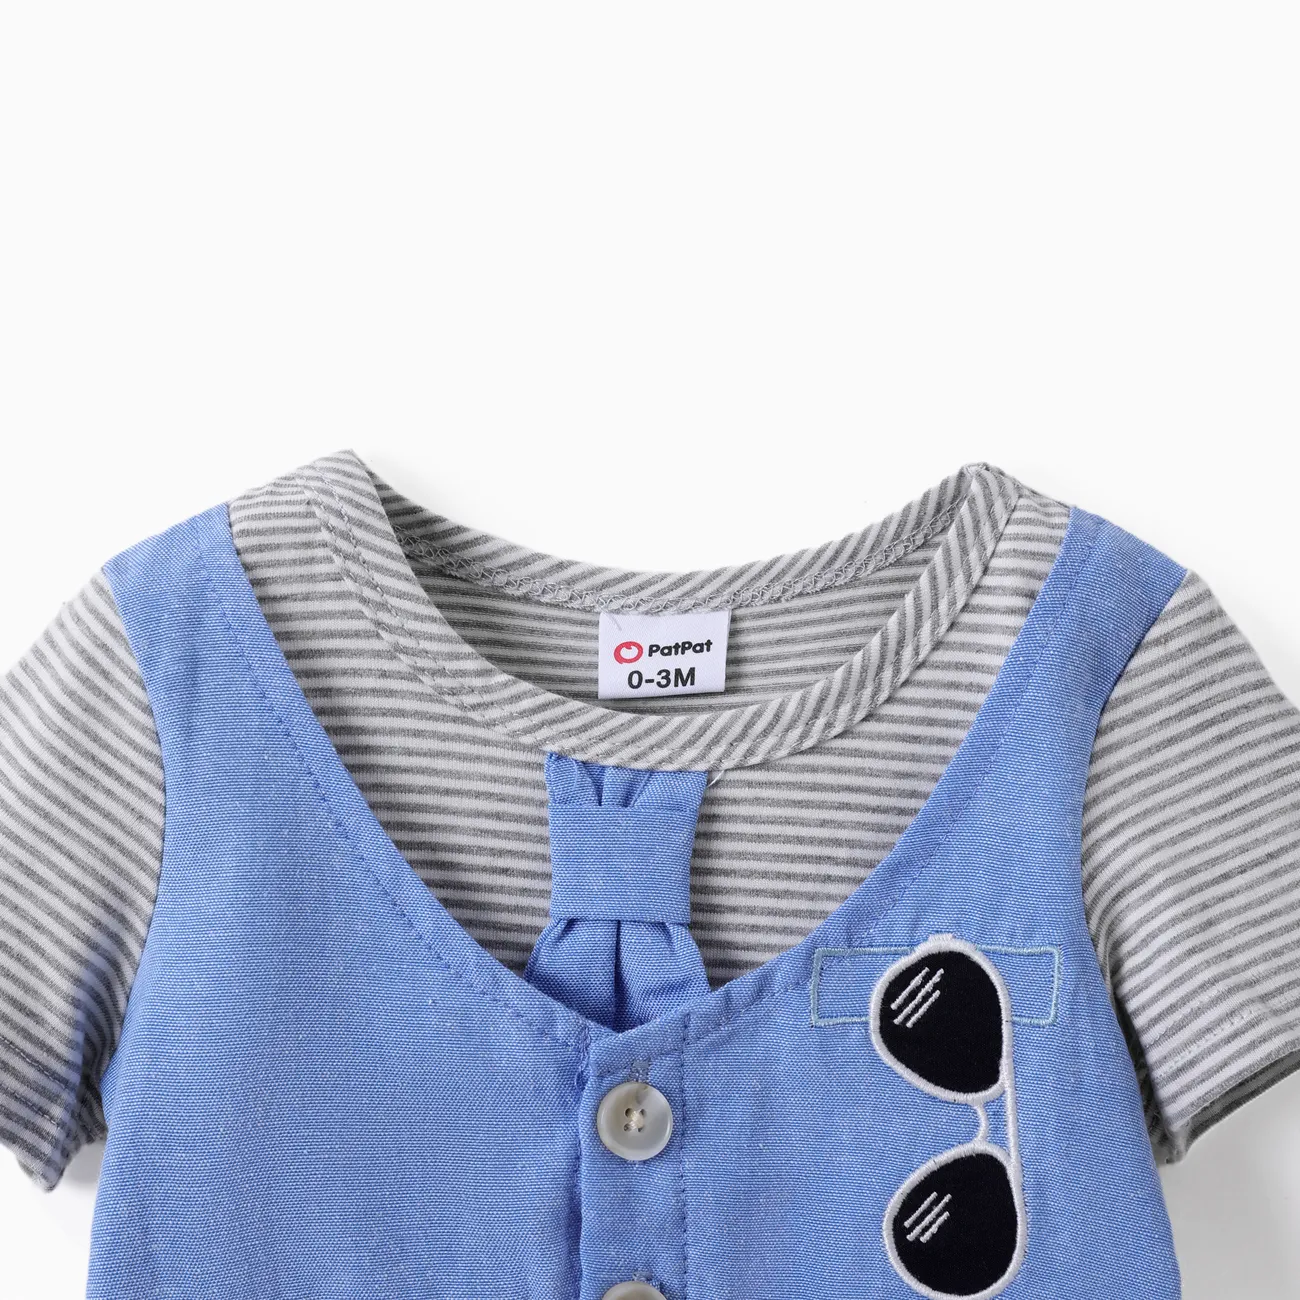 嬰兒 男 層次 休閒 短袖 連身衣 灰色 big image 1